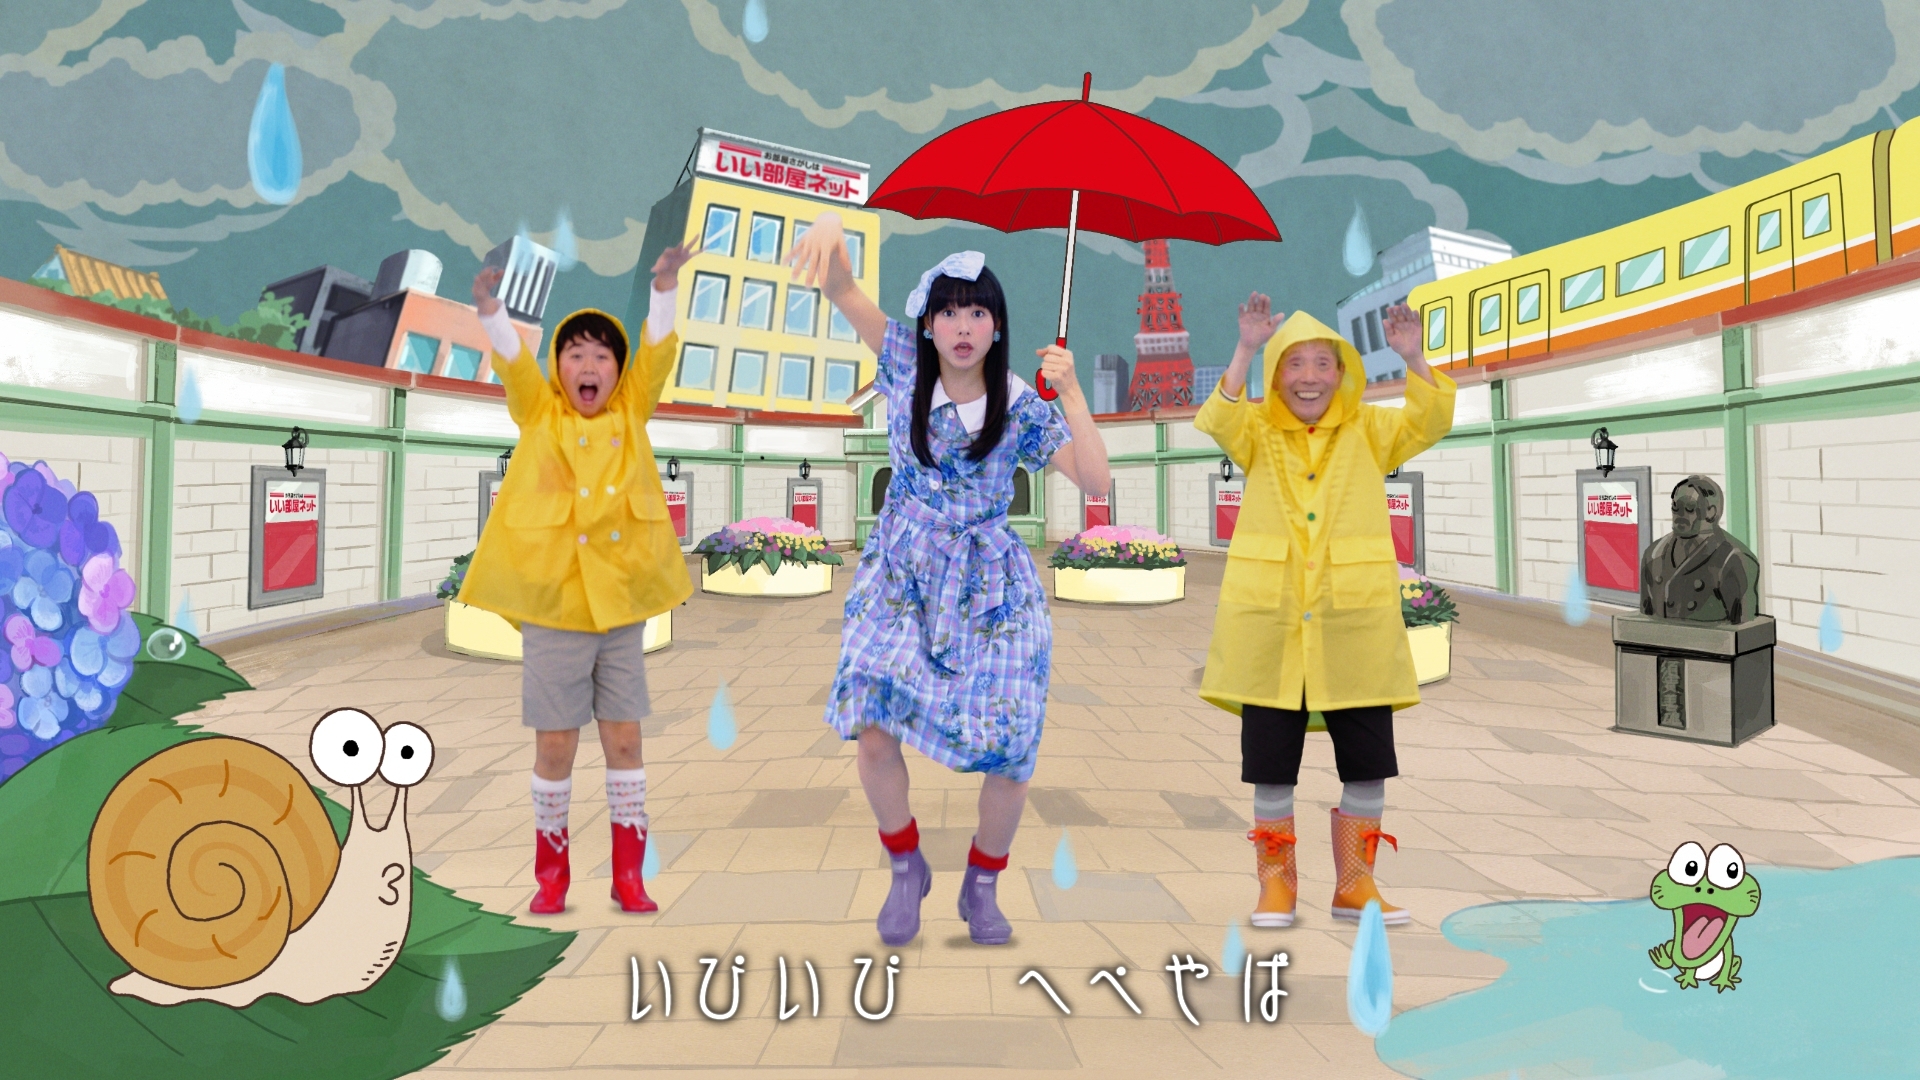 桜井日奈子さんがついにアニメに 梅雨のジメジメを吹き飛ばす新作登場 いい部屋ネット 新cm 5月1日より全国放送を開始 大東建託株式会社のプレスリリース